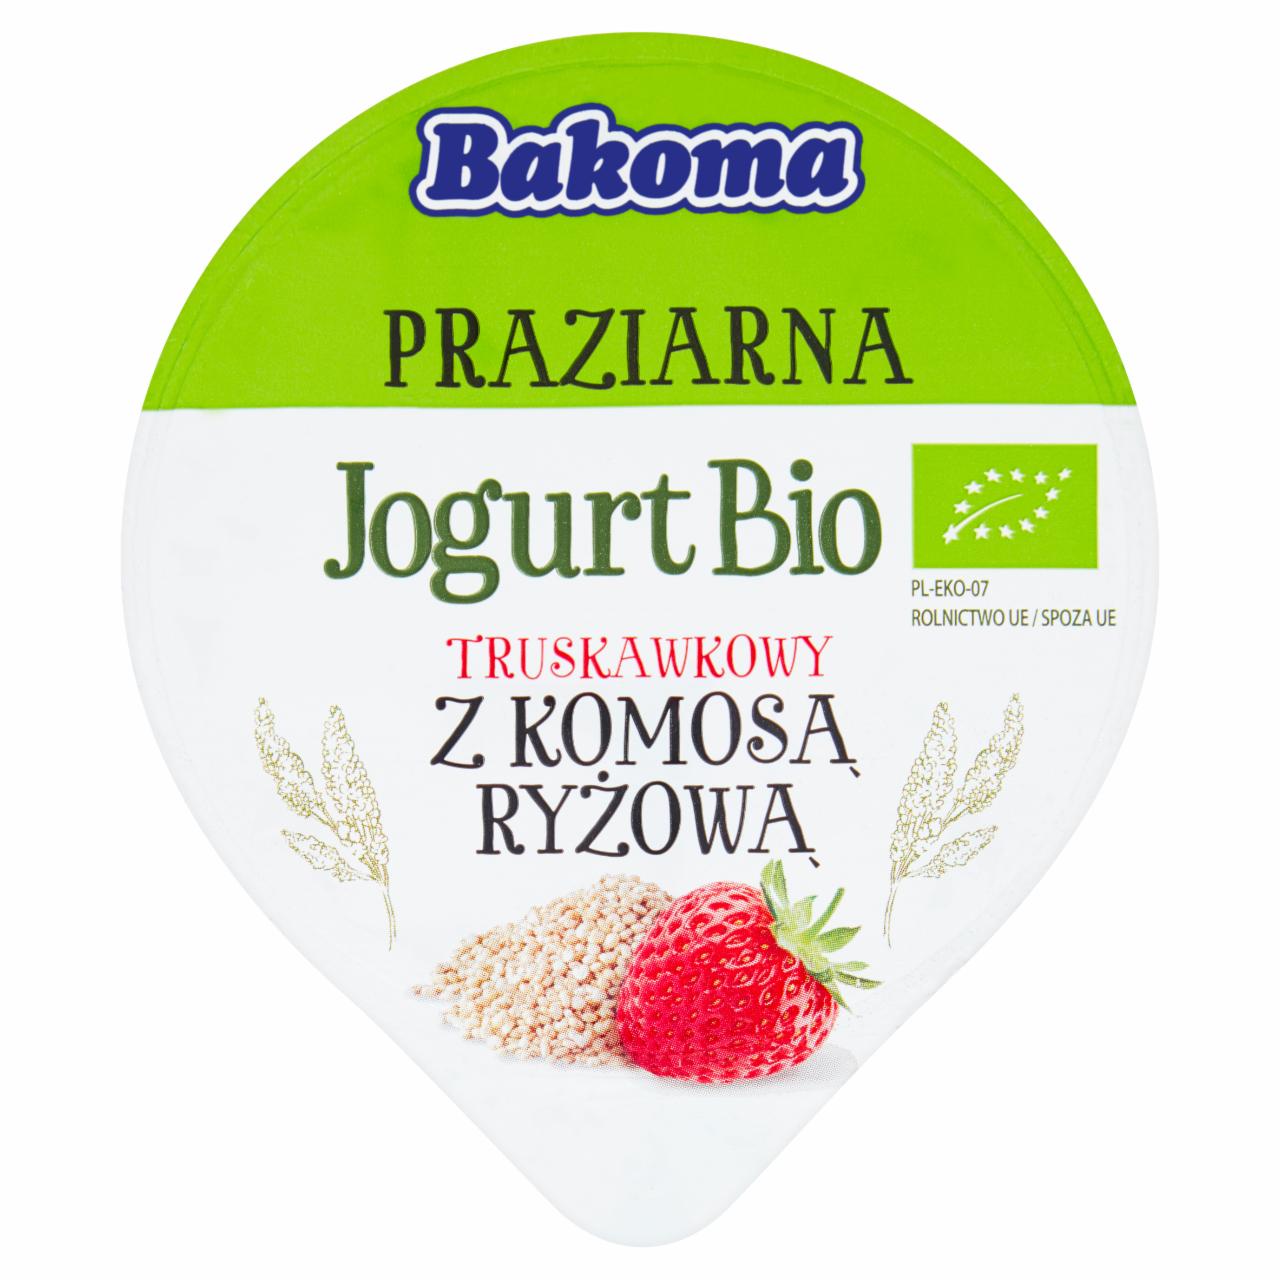 Zdjęcia - Bakoma Praziarna Jogurt Bio truskawkowy z komosą ryżową 140 g